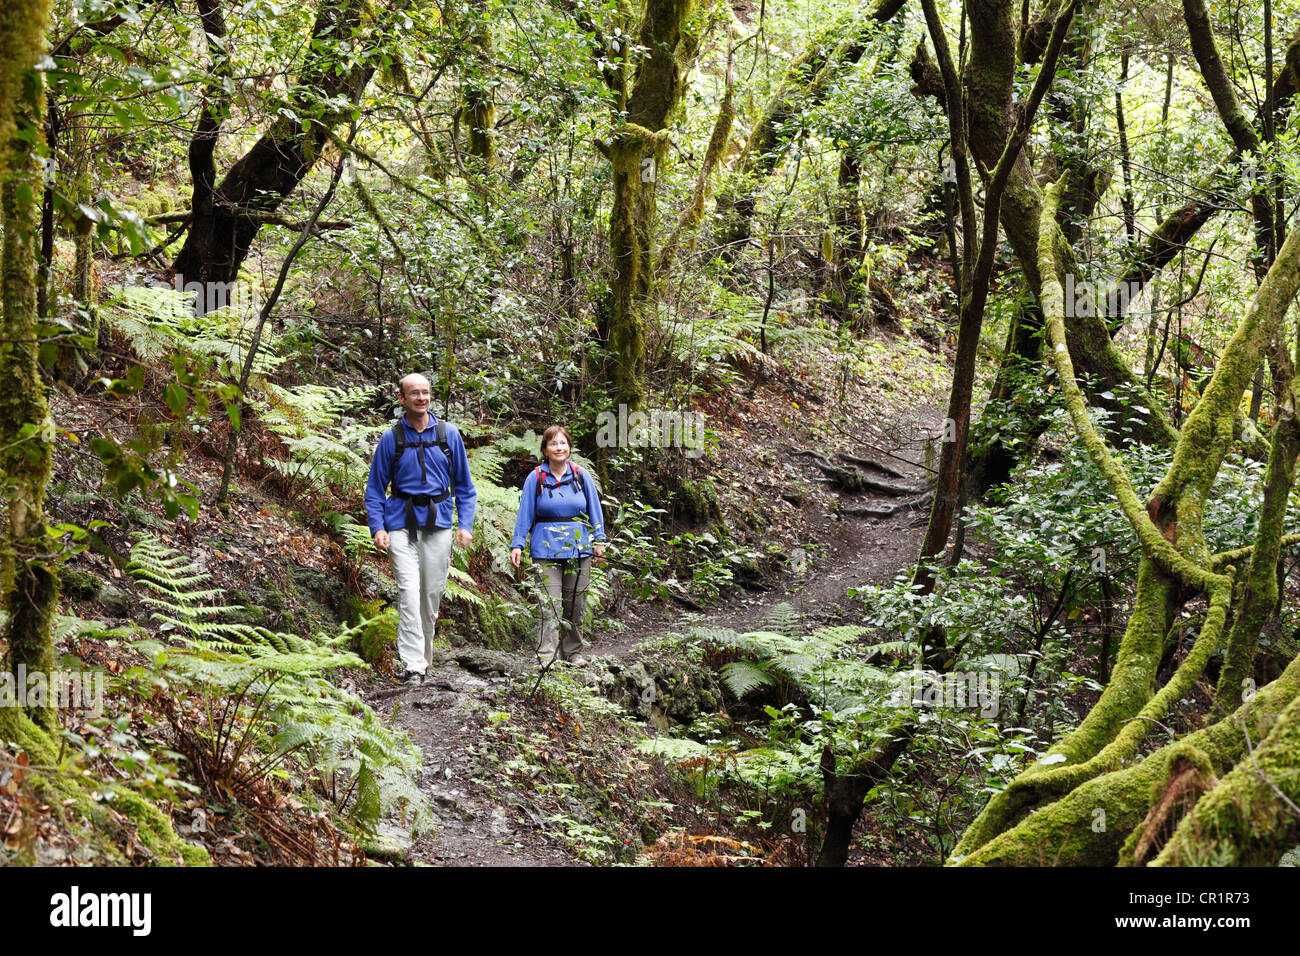 L'homme et la femme en randonnée sur un sentier forestier, forêt de lauriers, le Parc National de Garajonay, La Gomera, Canary Islands, Spain, Europe Banque D'Images